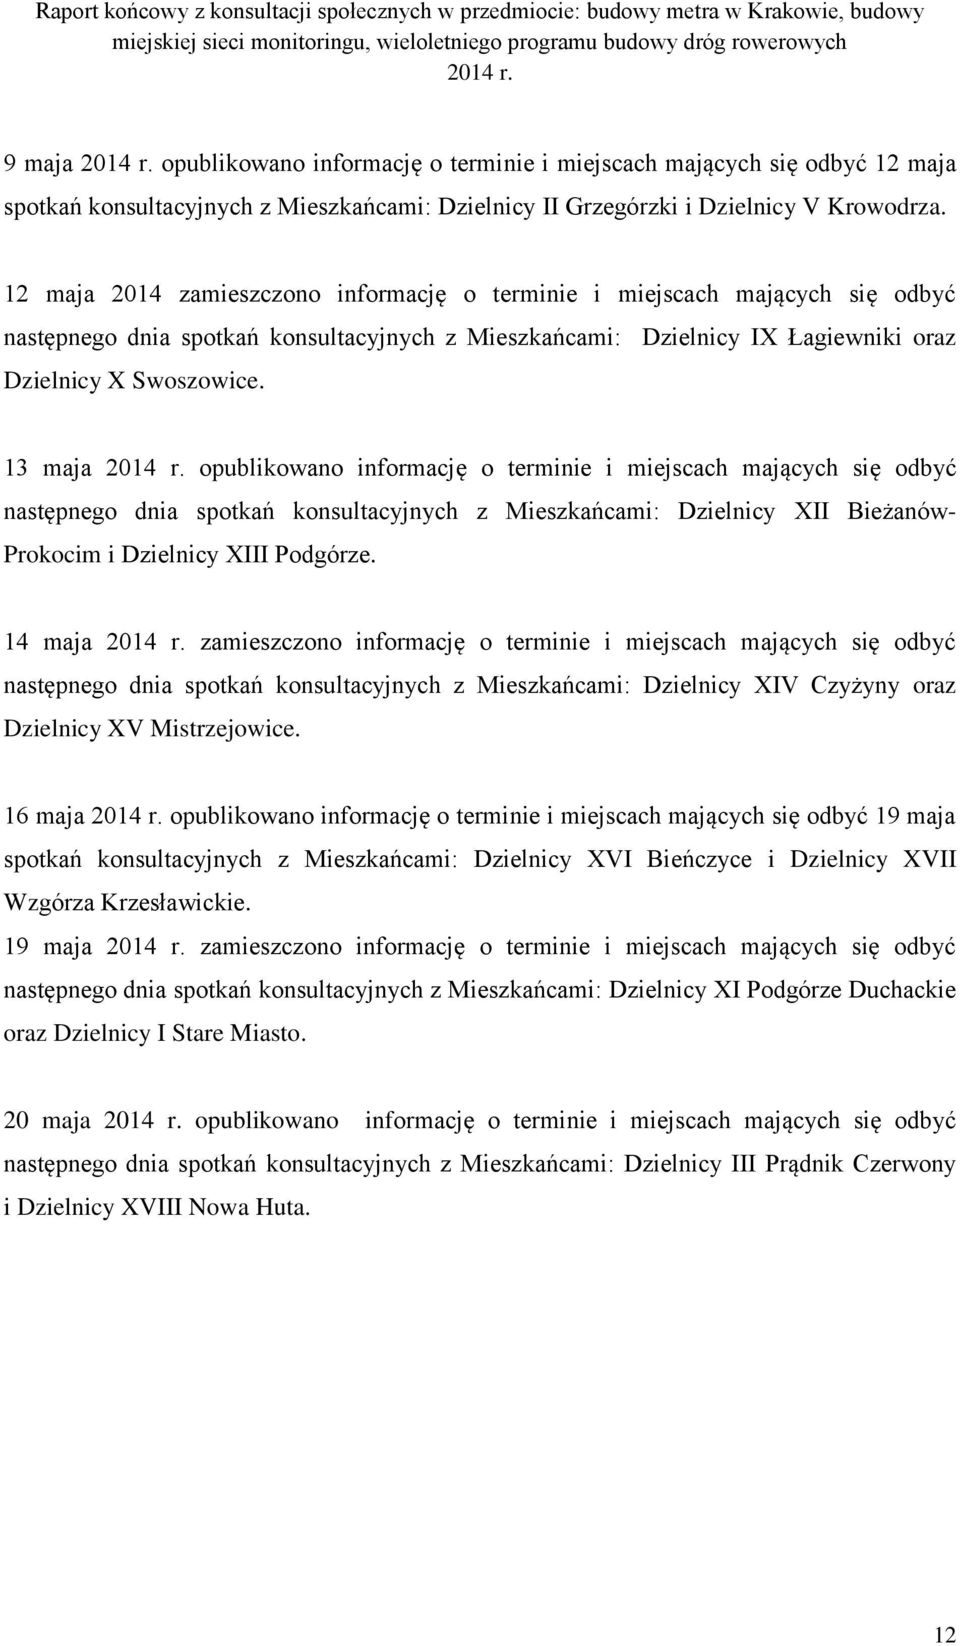 12 maja 2014 zamieszczono informację o terminie i miejscach mających się odbyć następnego dnia spotkań konsultacyjnych z Mieszkańcami: Dzielnicy IX Łagiewniki oraz Dzielnicy X Swoszowice.